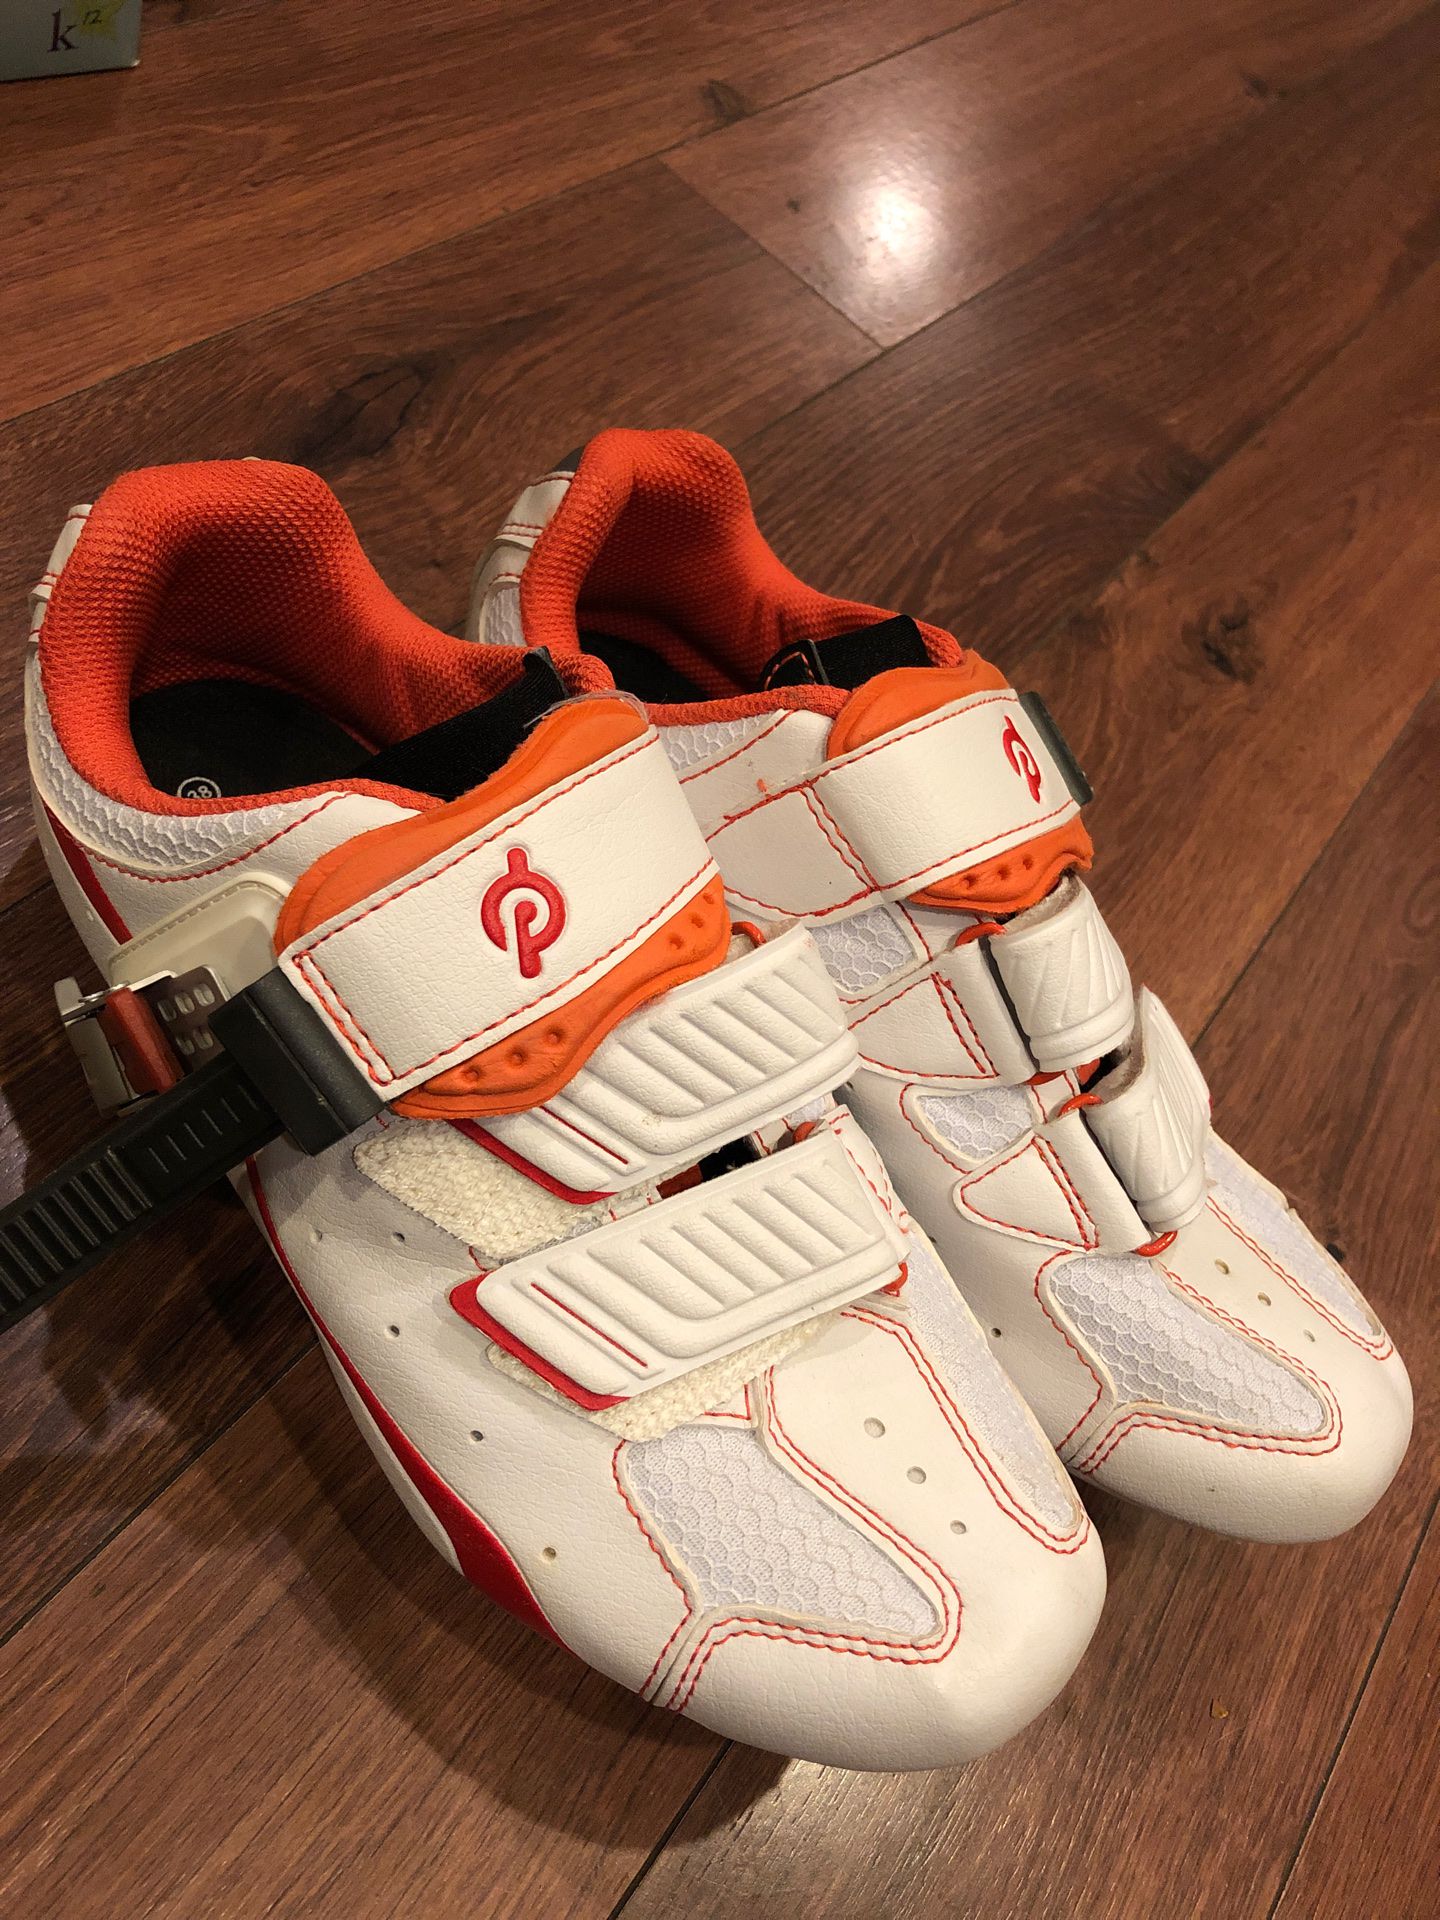 New Peloton cycling shoes - women’s 38